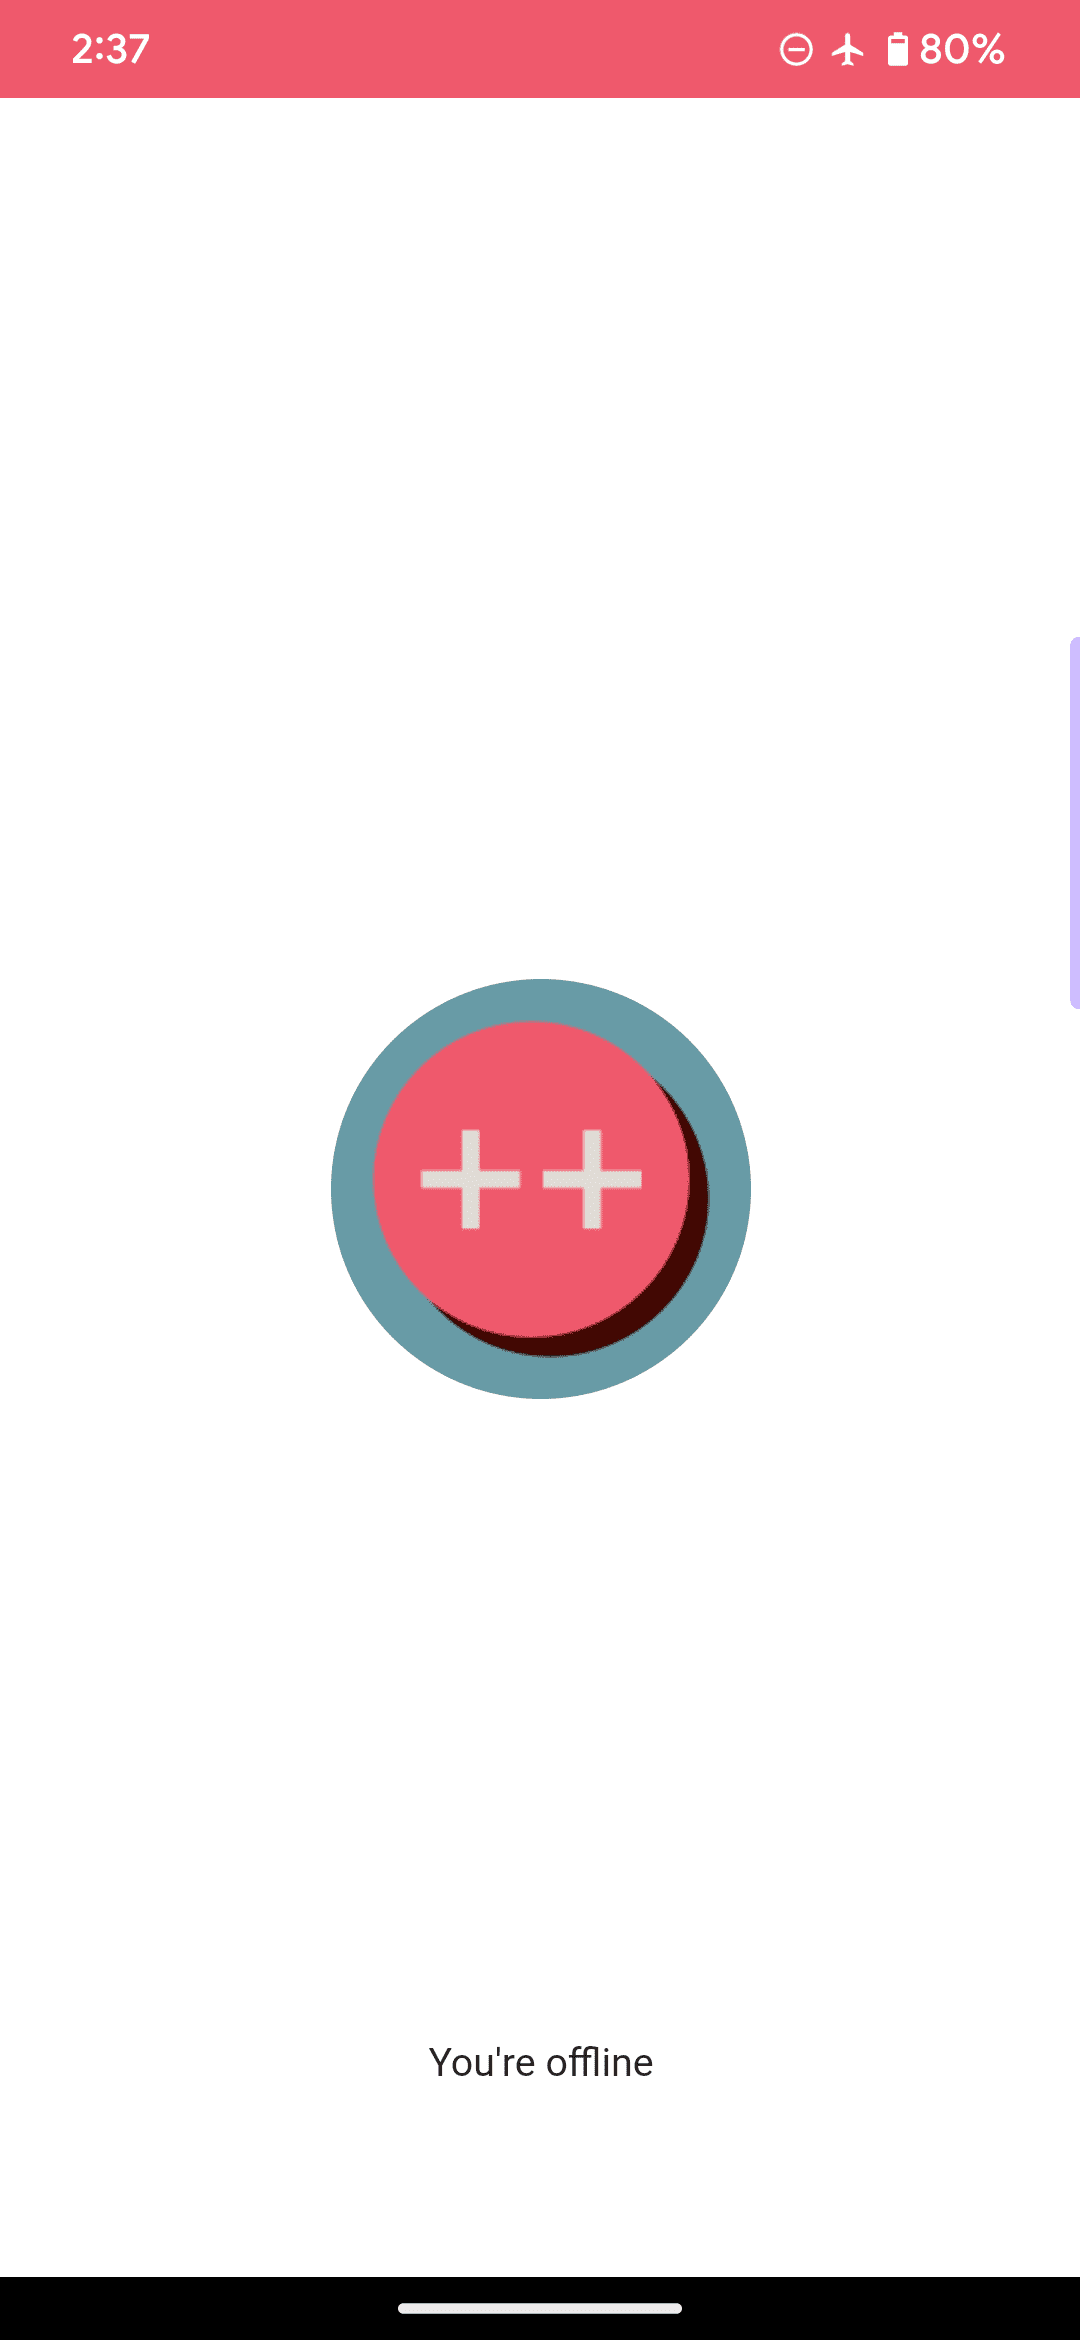 サンプル ウェブアプリのデフォルトのオフライン ページ。ロゴはピンクの円と 2 つのプラス記号であり、「現在オフラインです」というメッセージが含まれています。